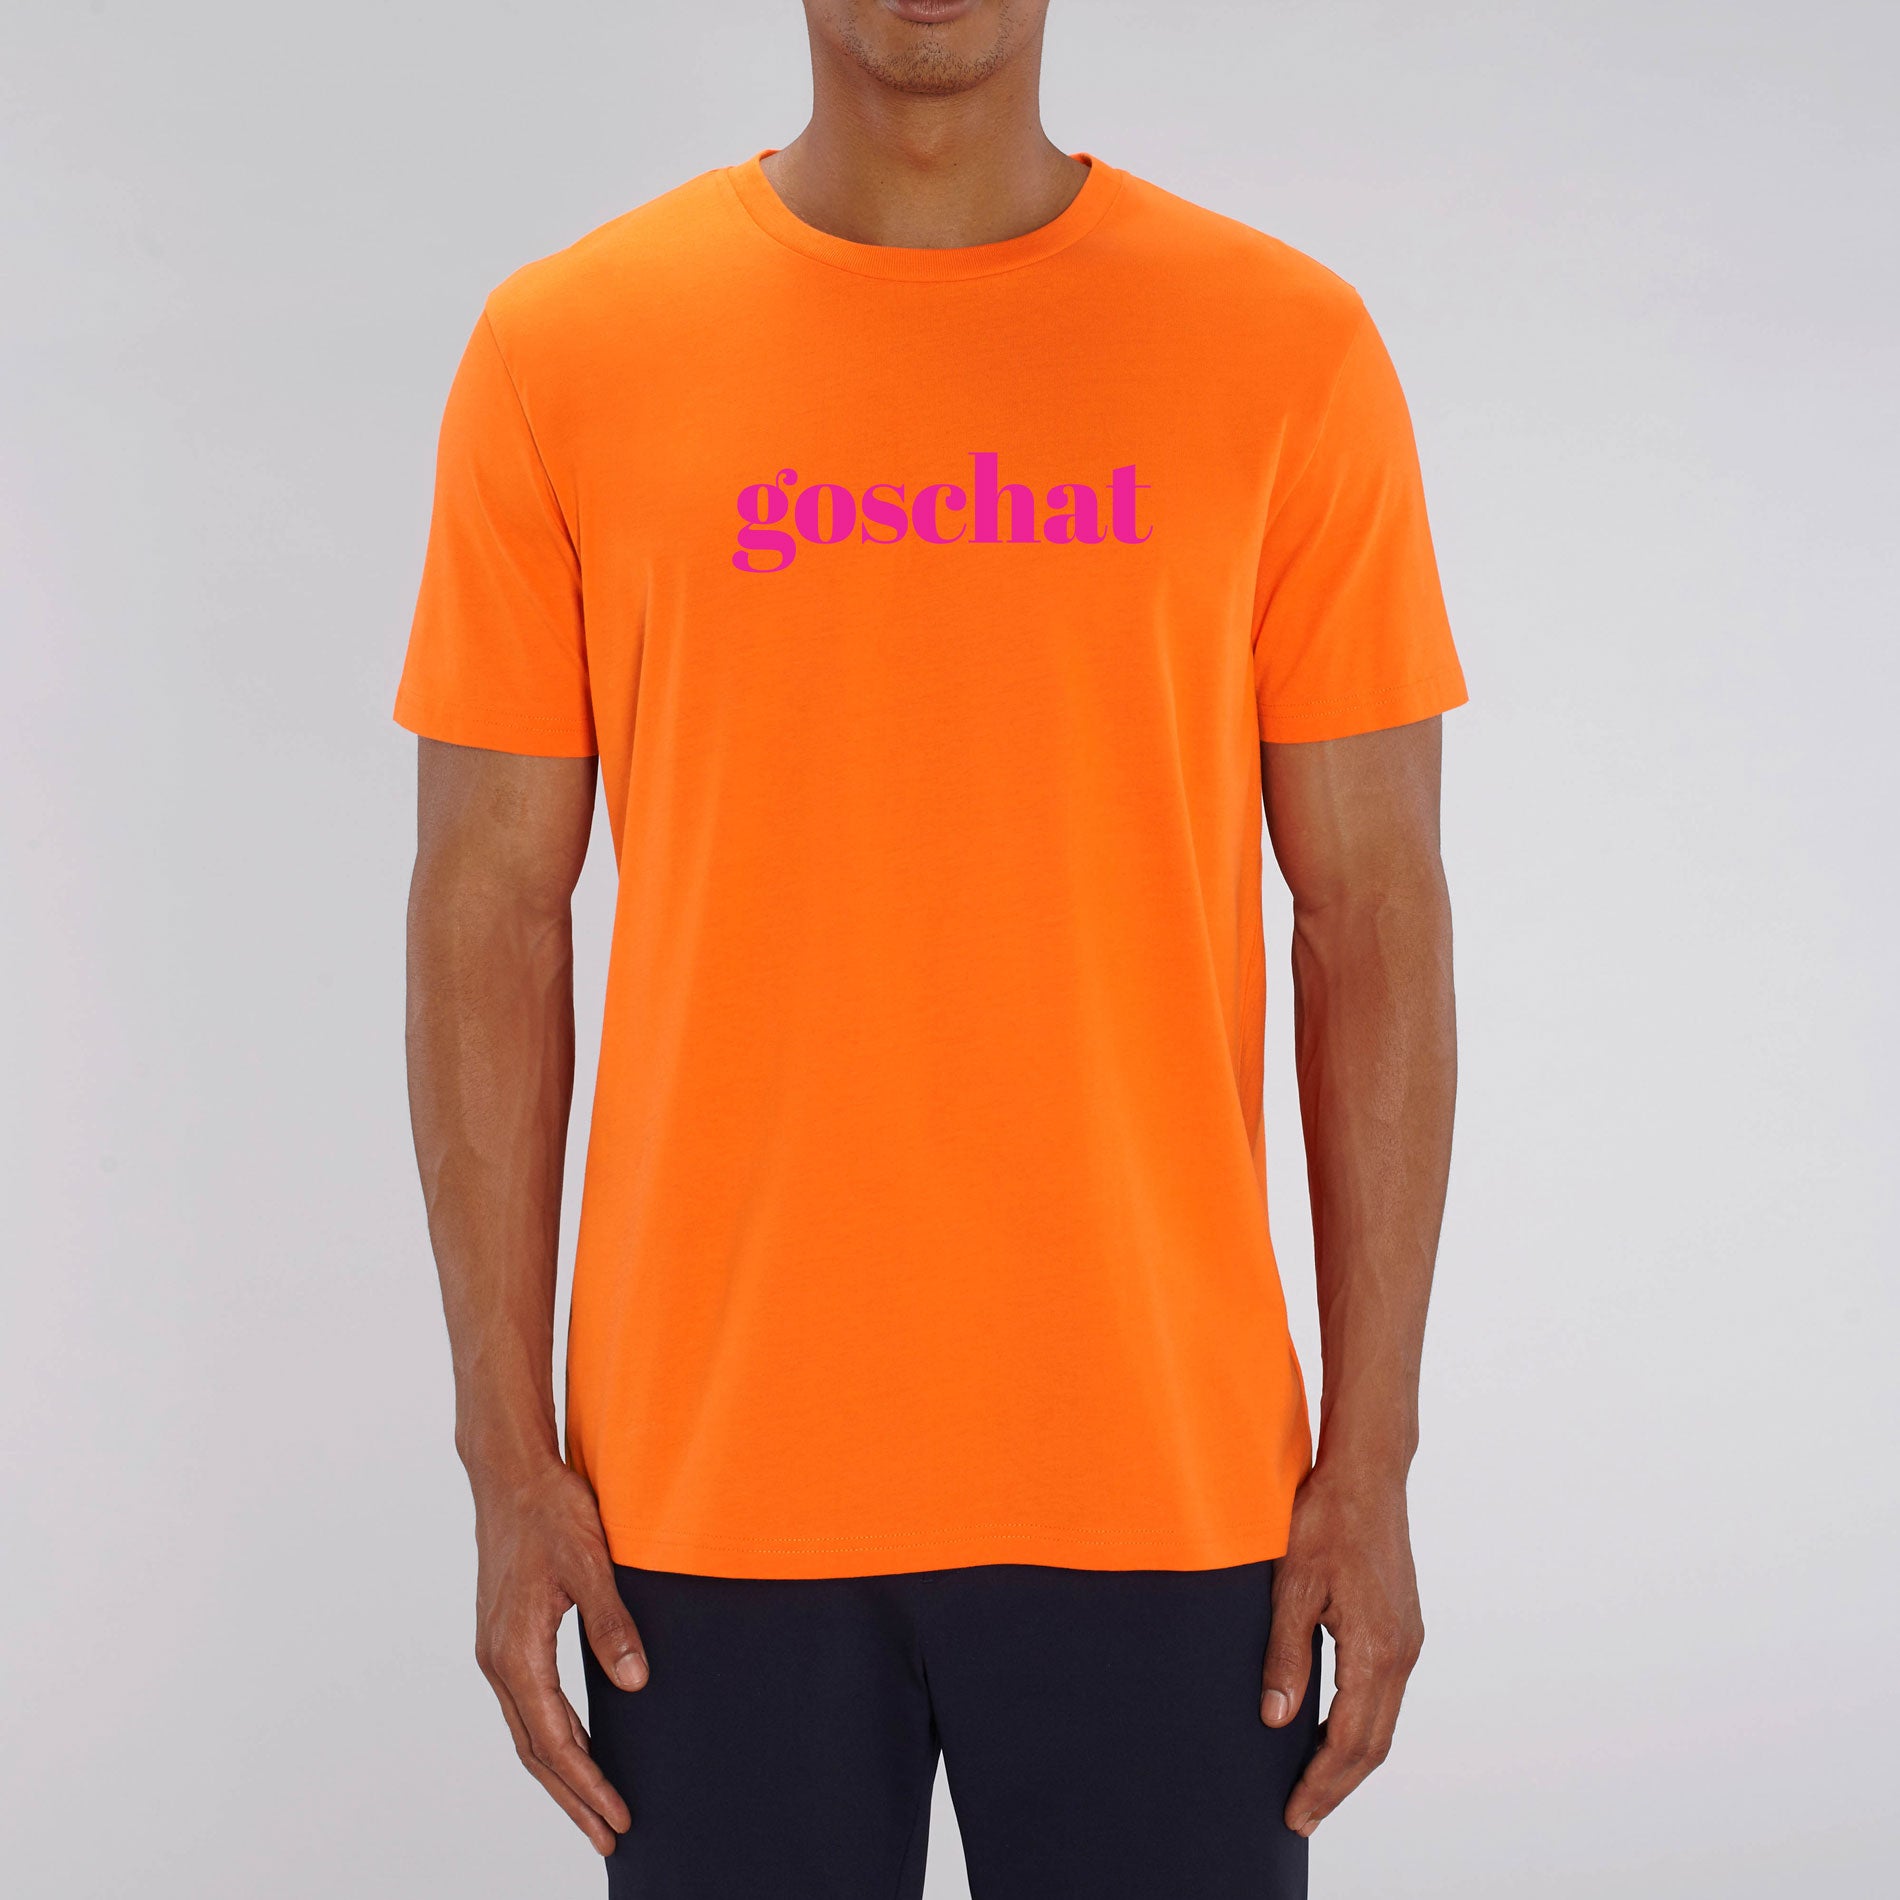 GOSCHAT knallorange & DELUXE - T-Shirt BUSSI neonpink